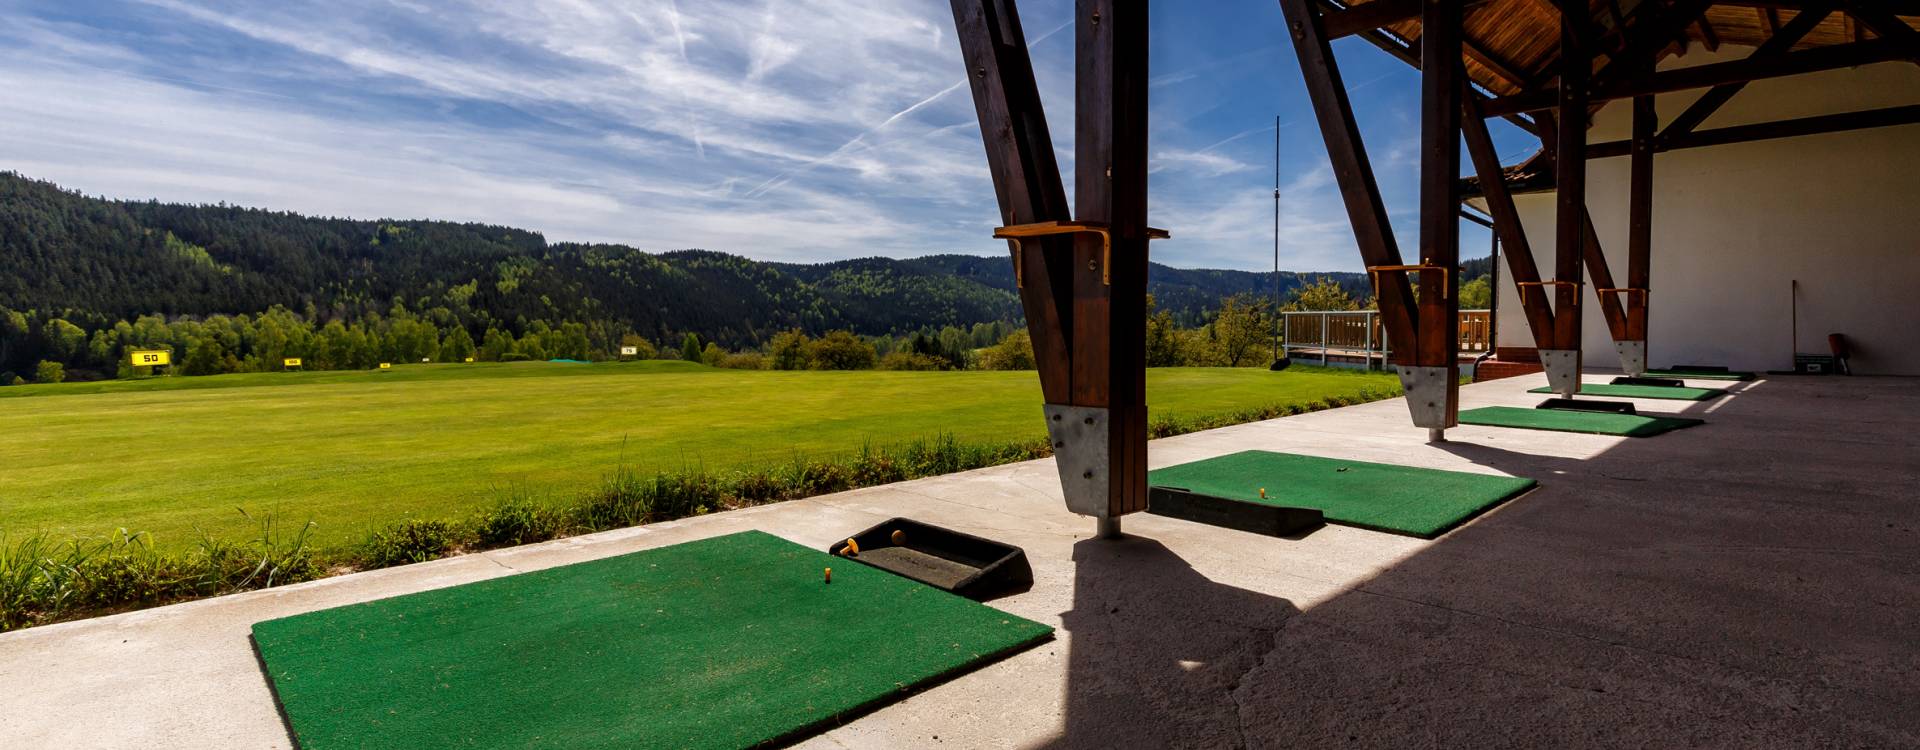 Cihelny Golf & Wellness Resort - Golfaufenthalt mit All Inclusive Green Fee-Paket (2,3 Nächte)